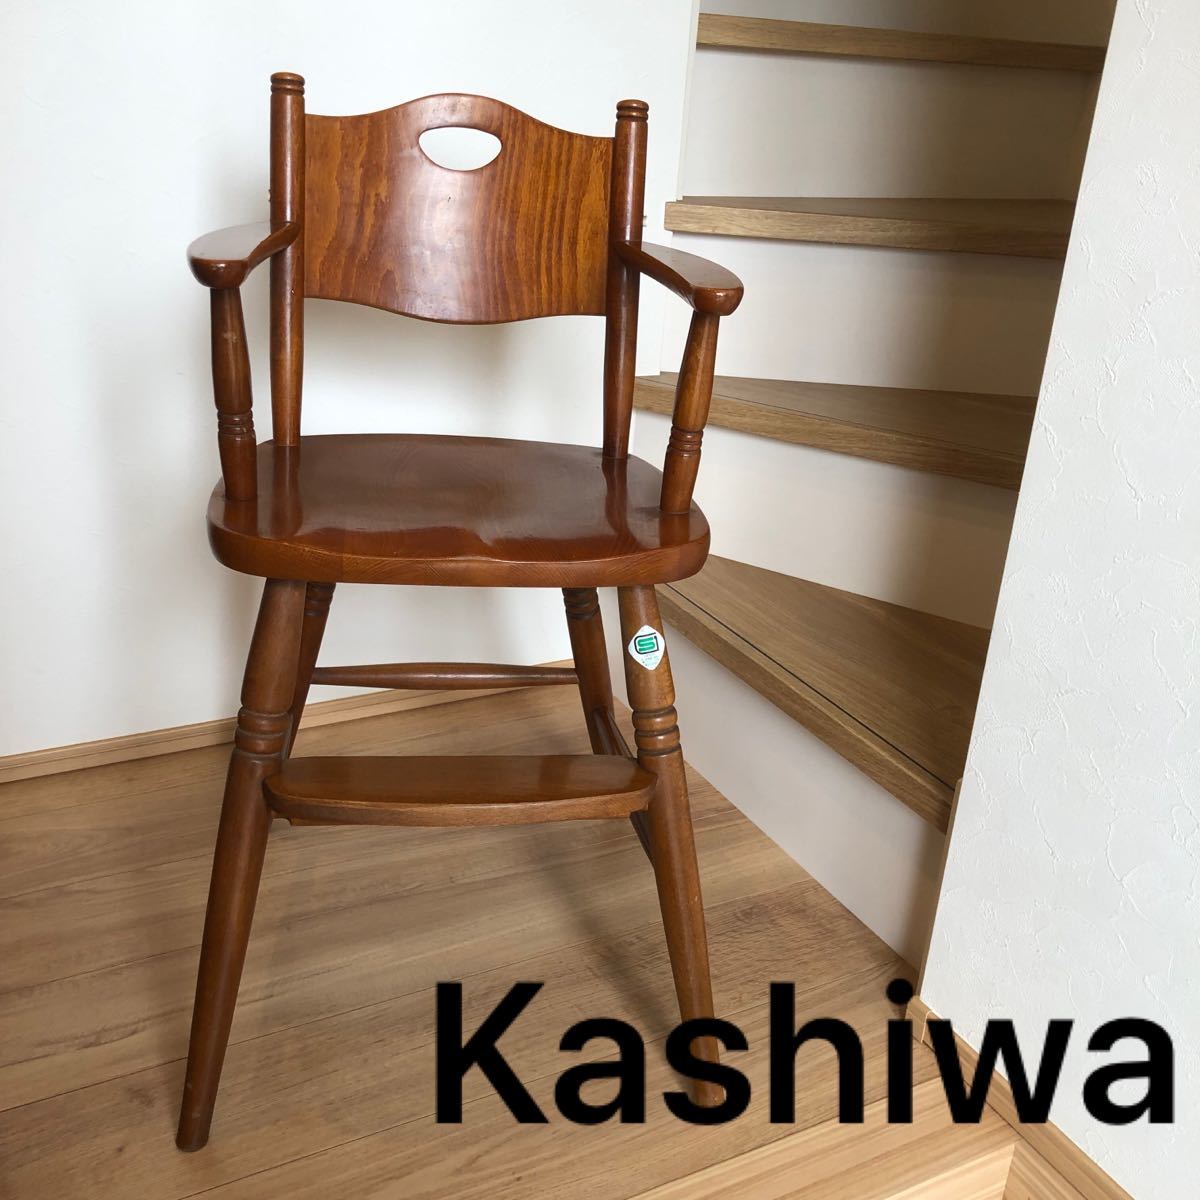 公式ファッション通販 ベビーチェア 柏木工 キッズチェア kashiwa 木製家具 ハイチェア 幼児用 イス